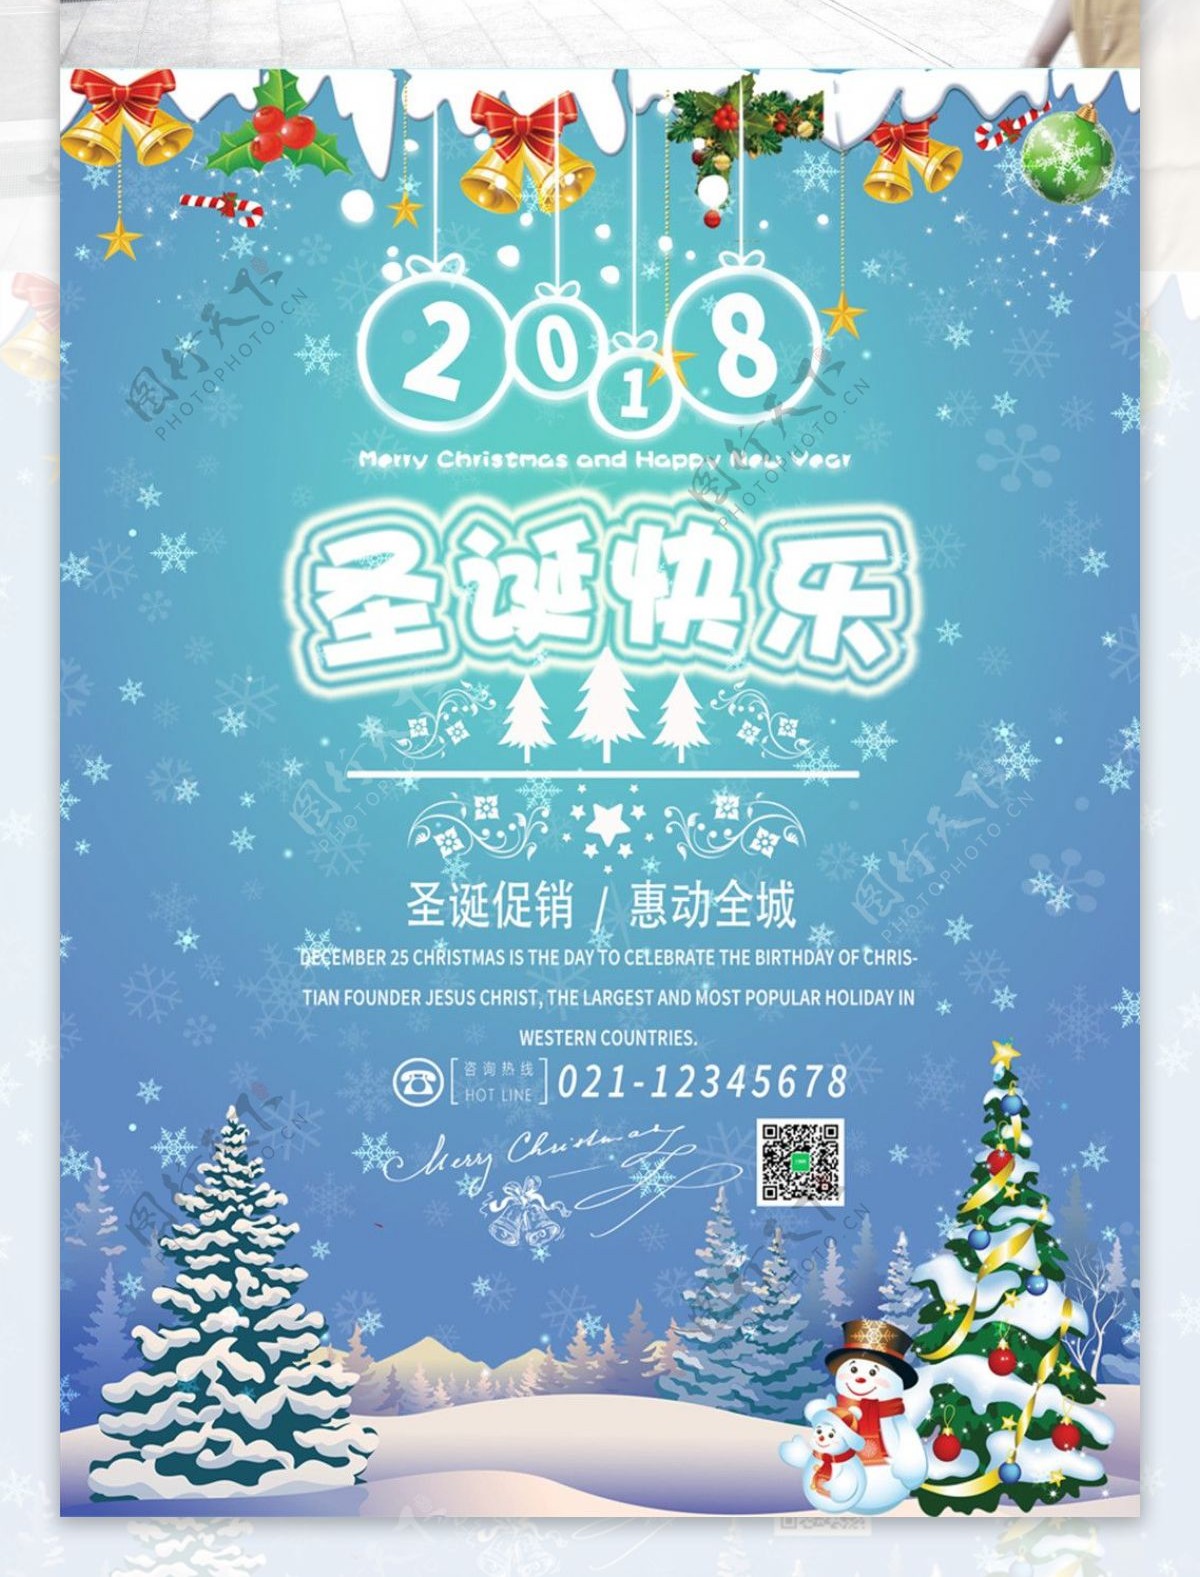 2018年圣诞蓝色清新促销海报PSD模板